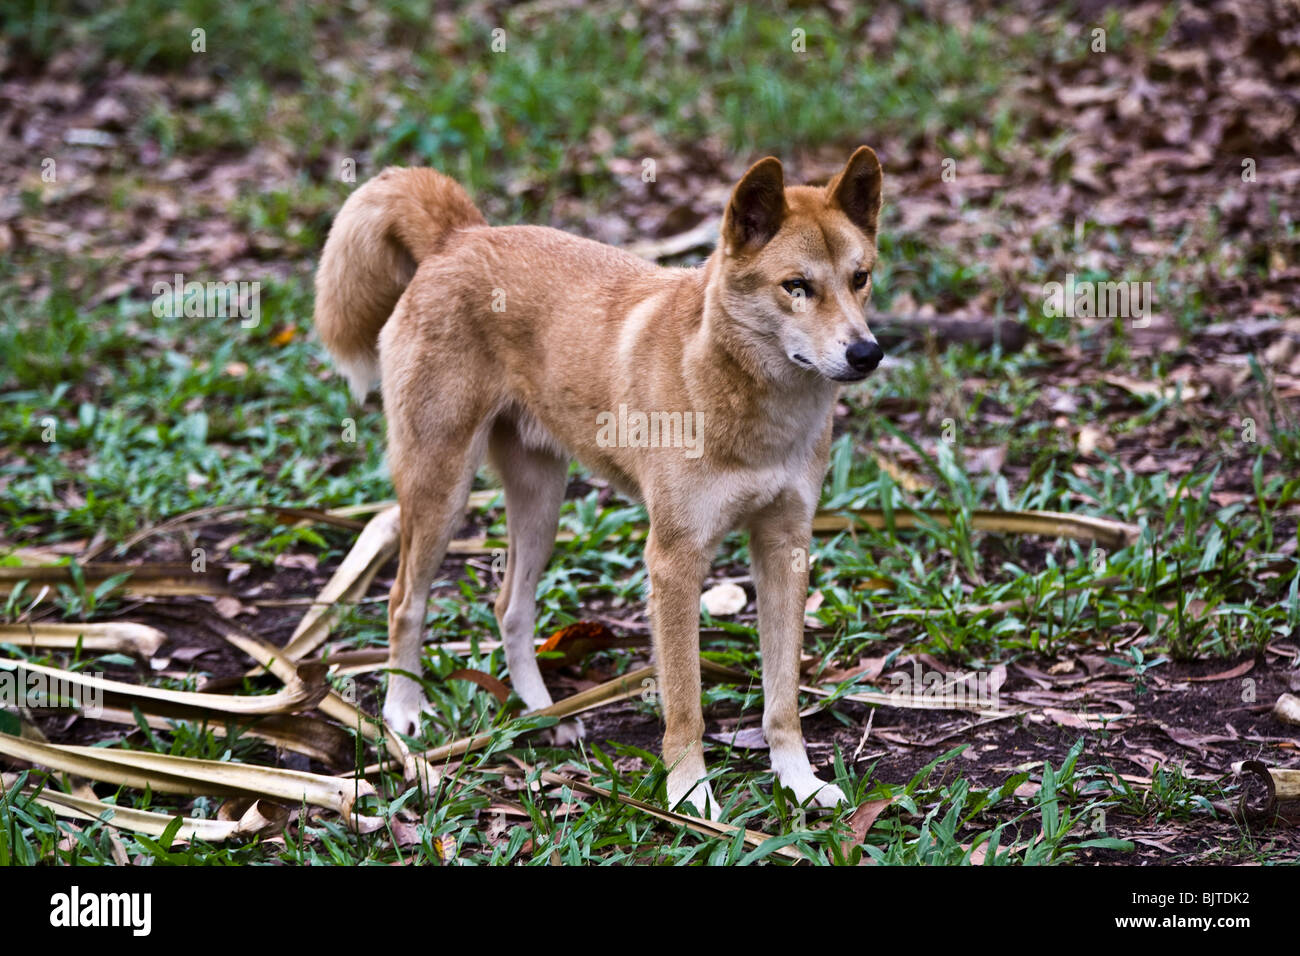 Diese Dingo wurde bei Territory Wildlife Park Berry Springs in der Nähe von Darwin, Northern Territory Australien gesehen. Stockfoto